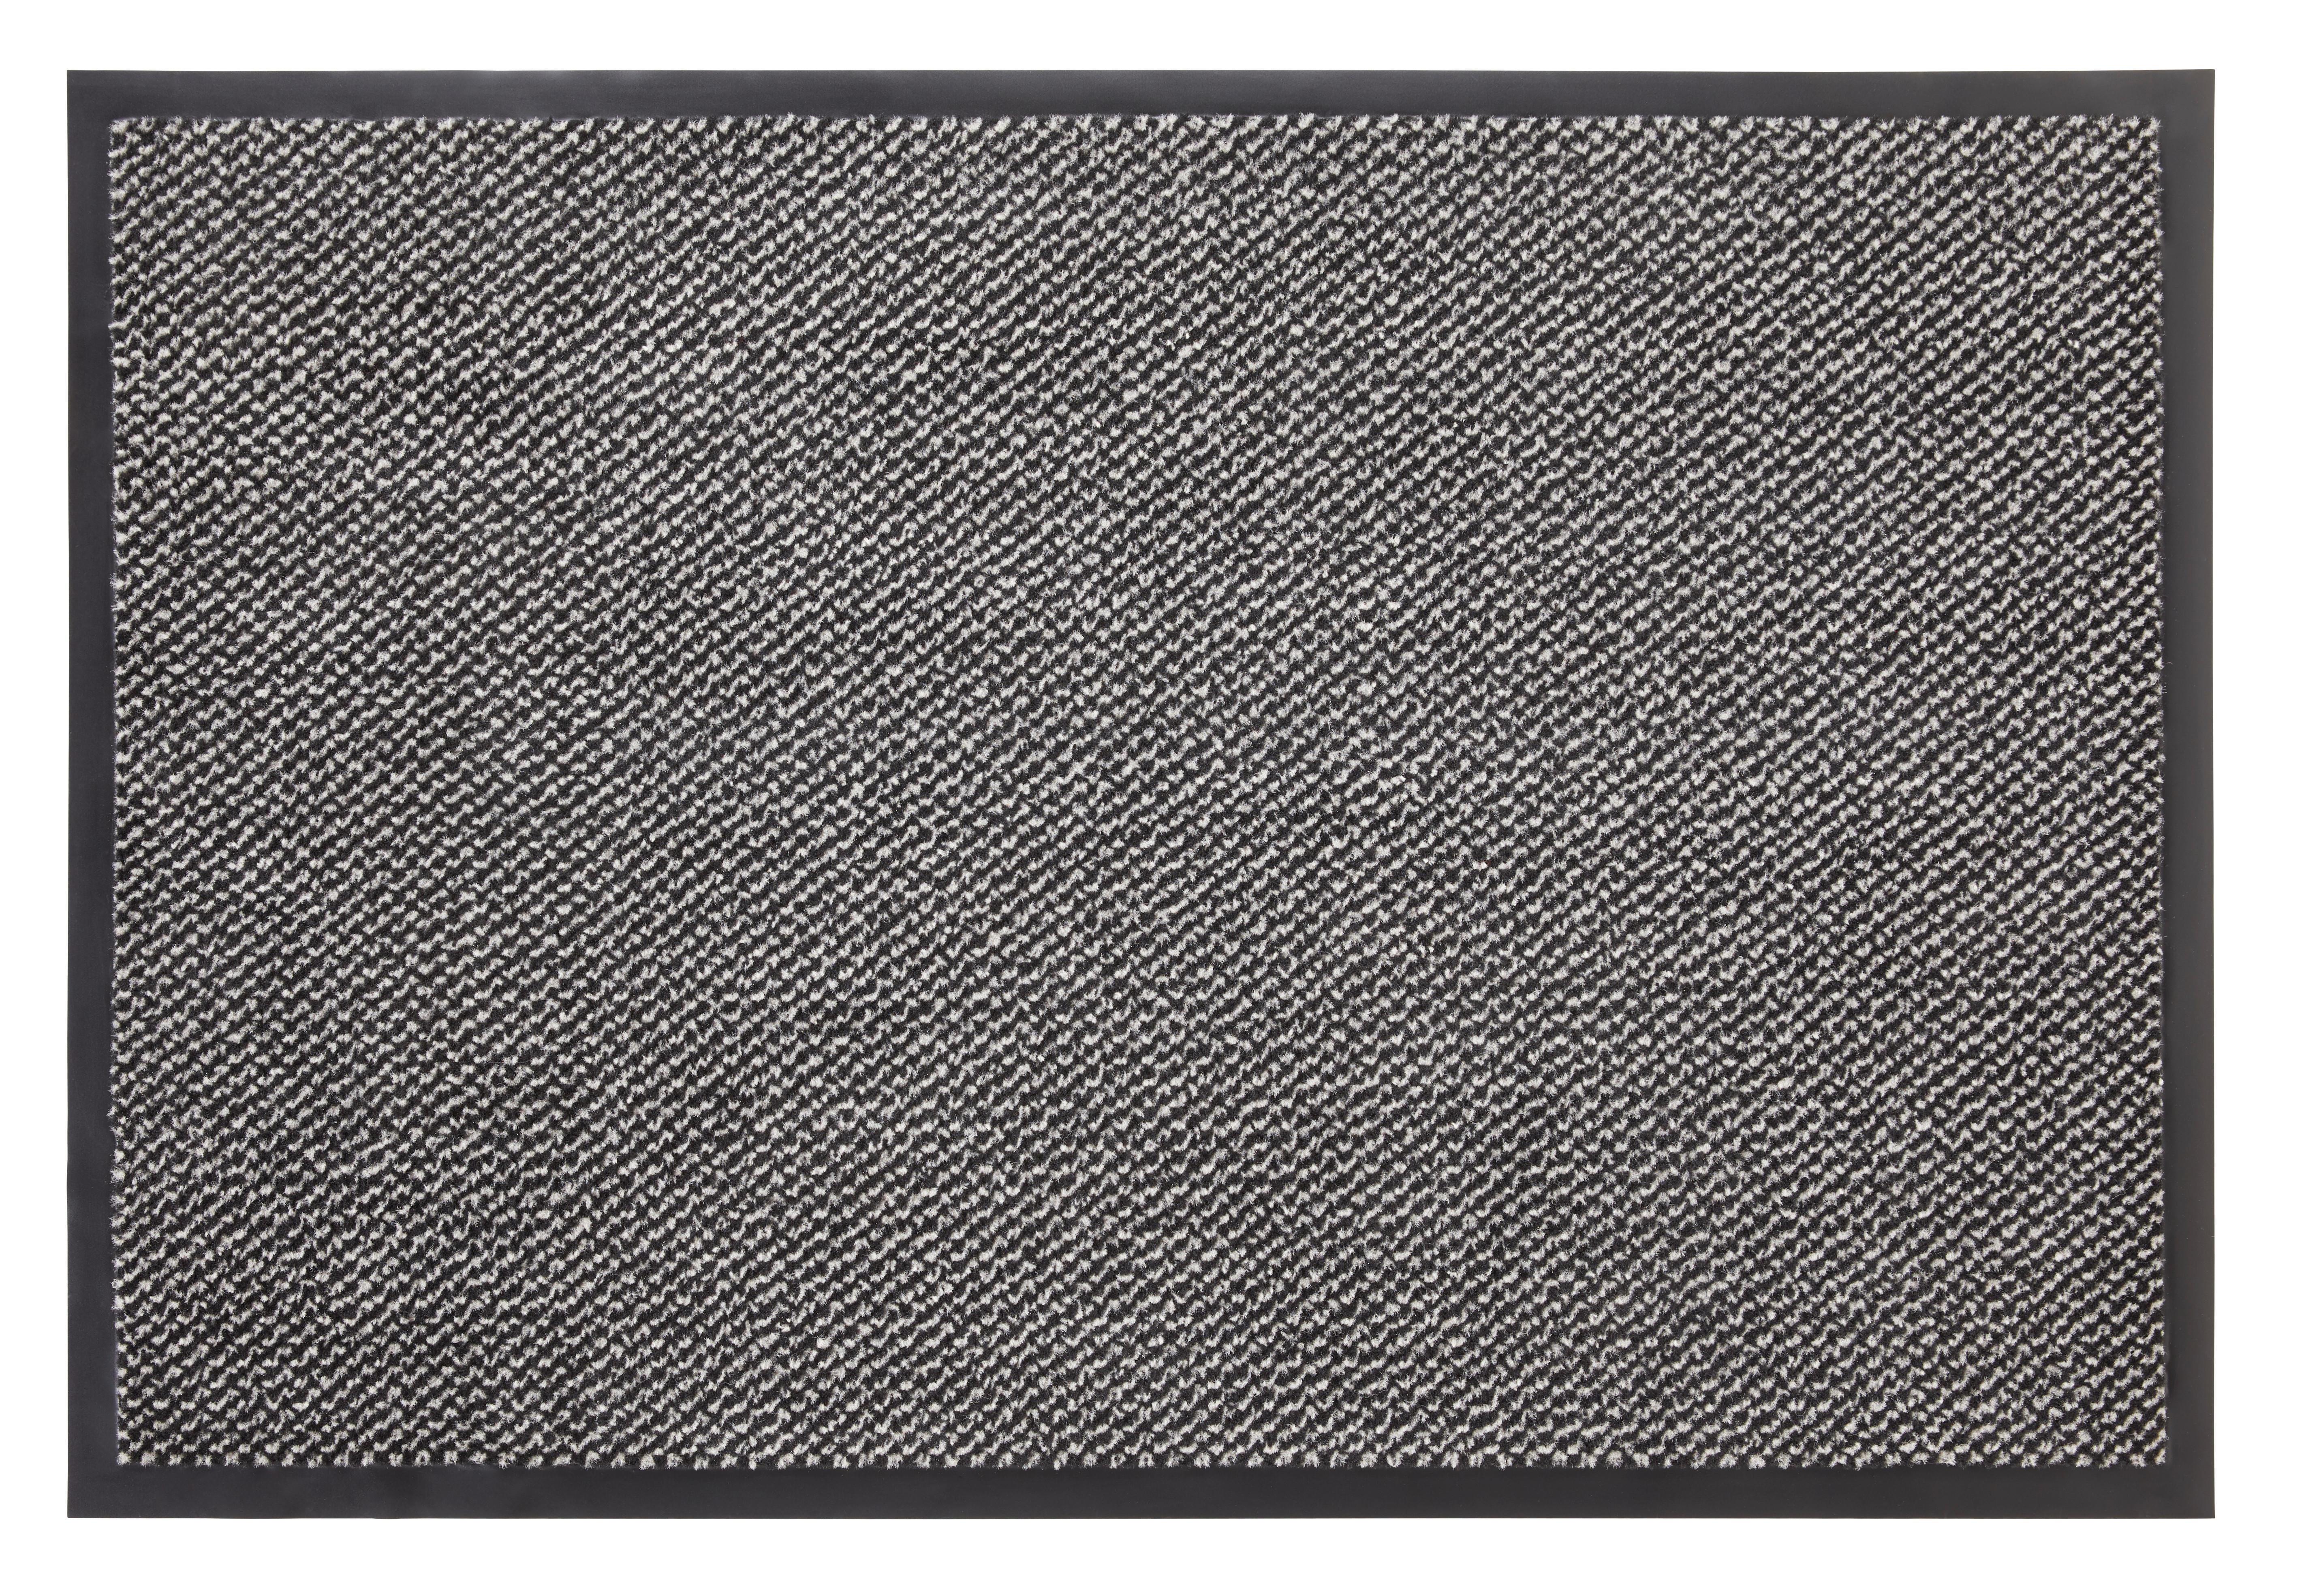 Dveřní Rohožka Hamptons 3, 80/120cm - černá/béžová, Konvenční, textil (80/120cm) - Modern Living